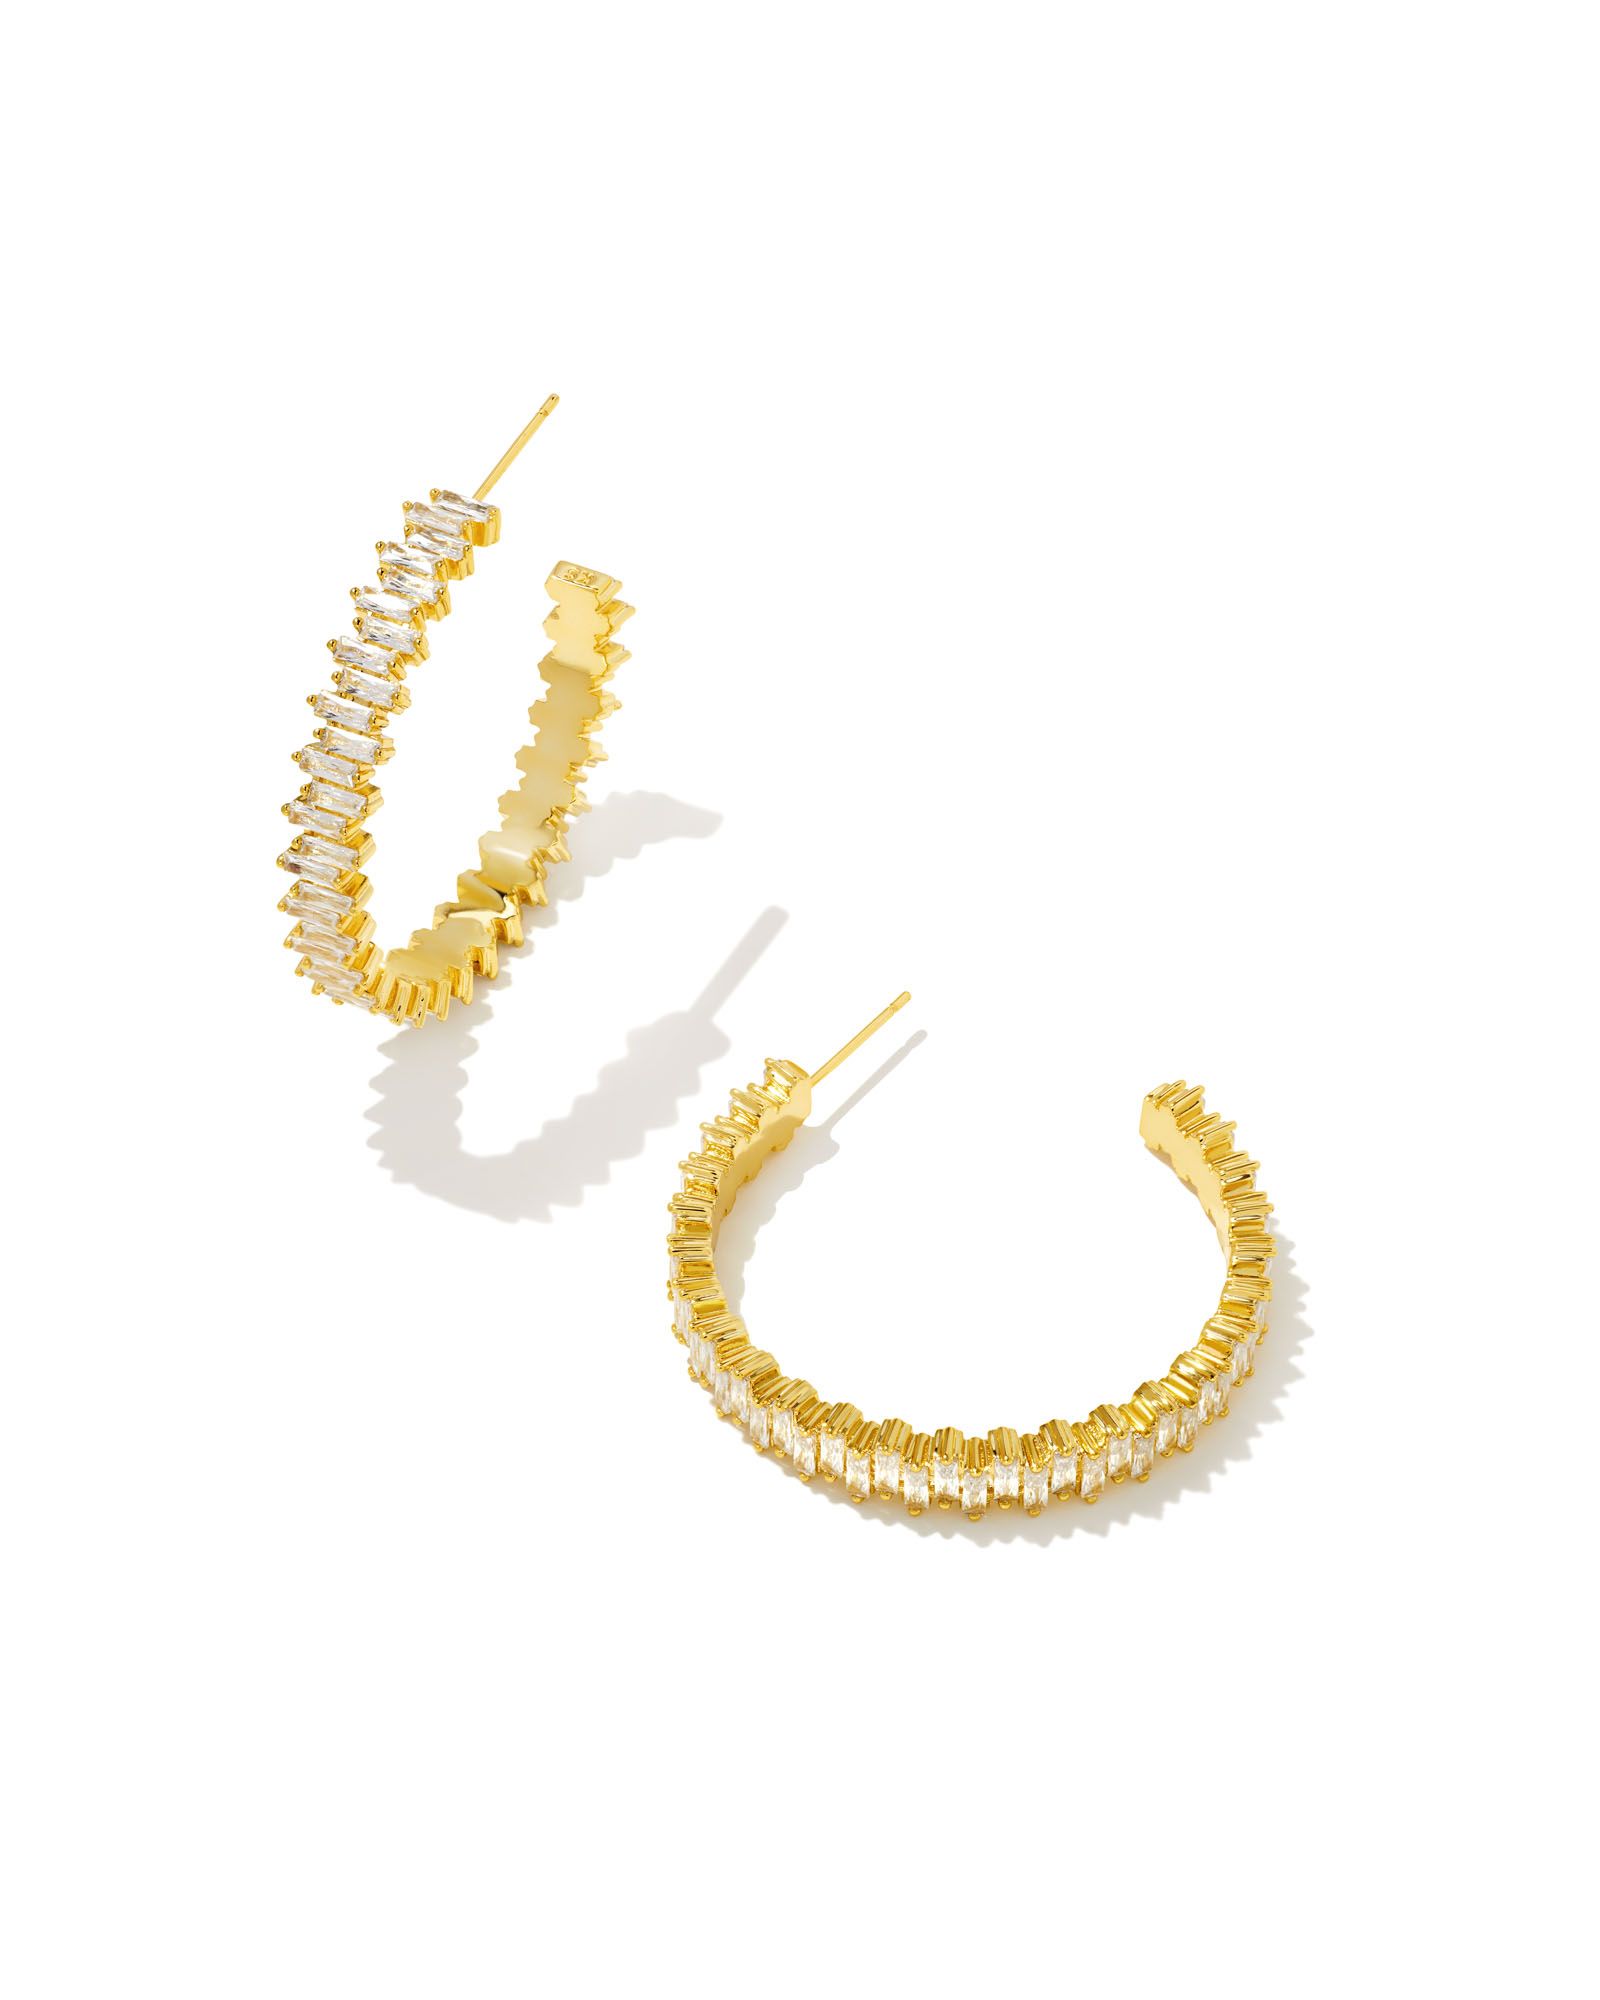 Juliette Gold Hoop Earrings in White Crystal | Kendra Scott | Kendra Scott